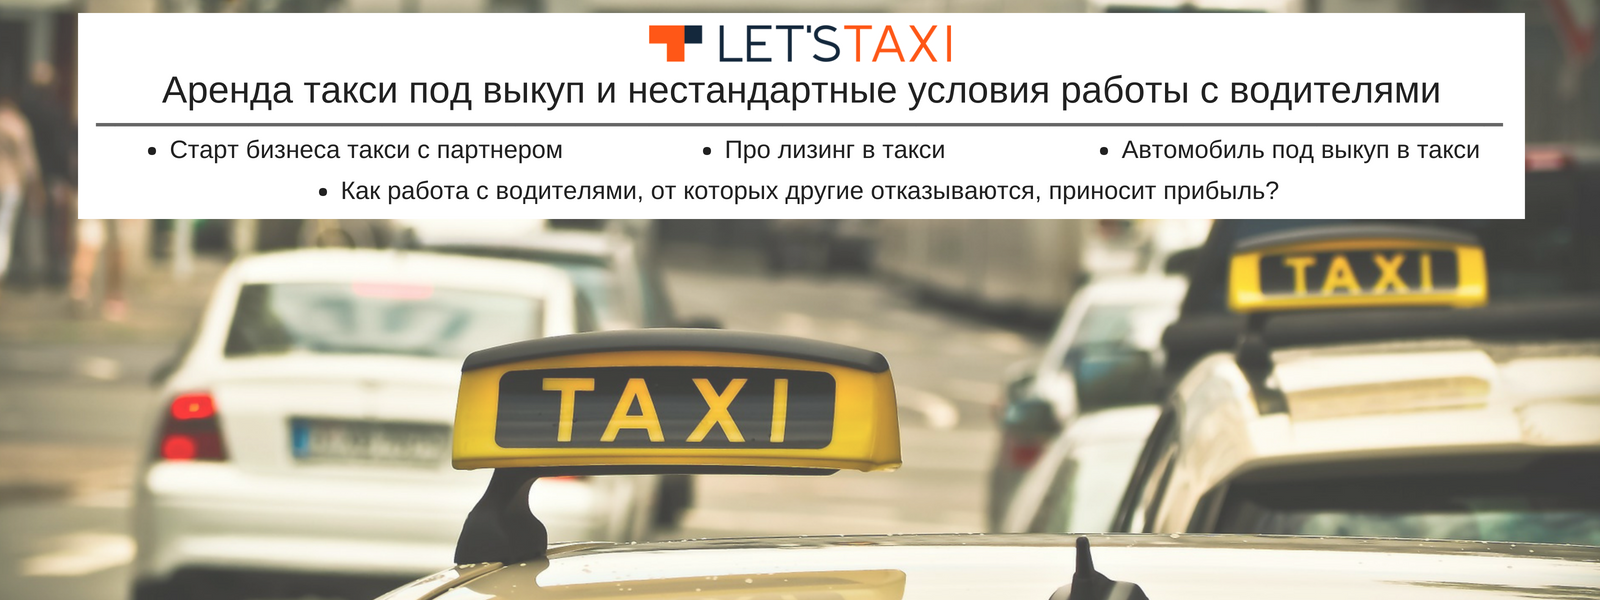 Выкуп право такси. Такси под выкуп. Выкуп авто такси. Условия работы в такси аренда. Машины под такси с выкупом.